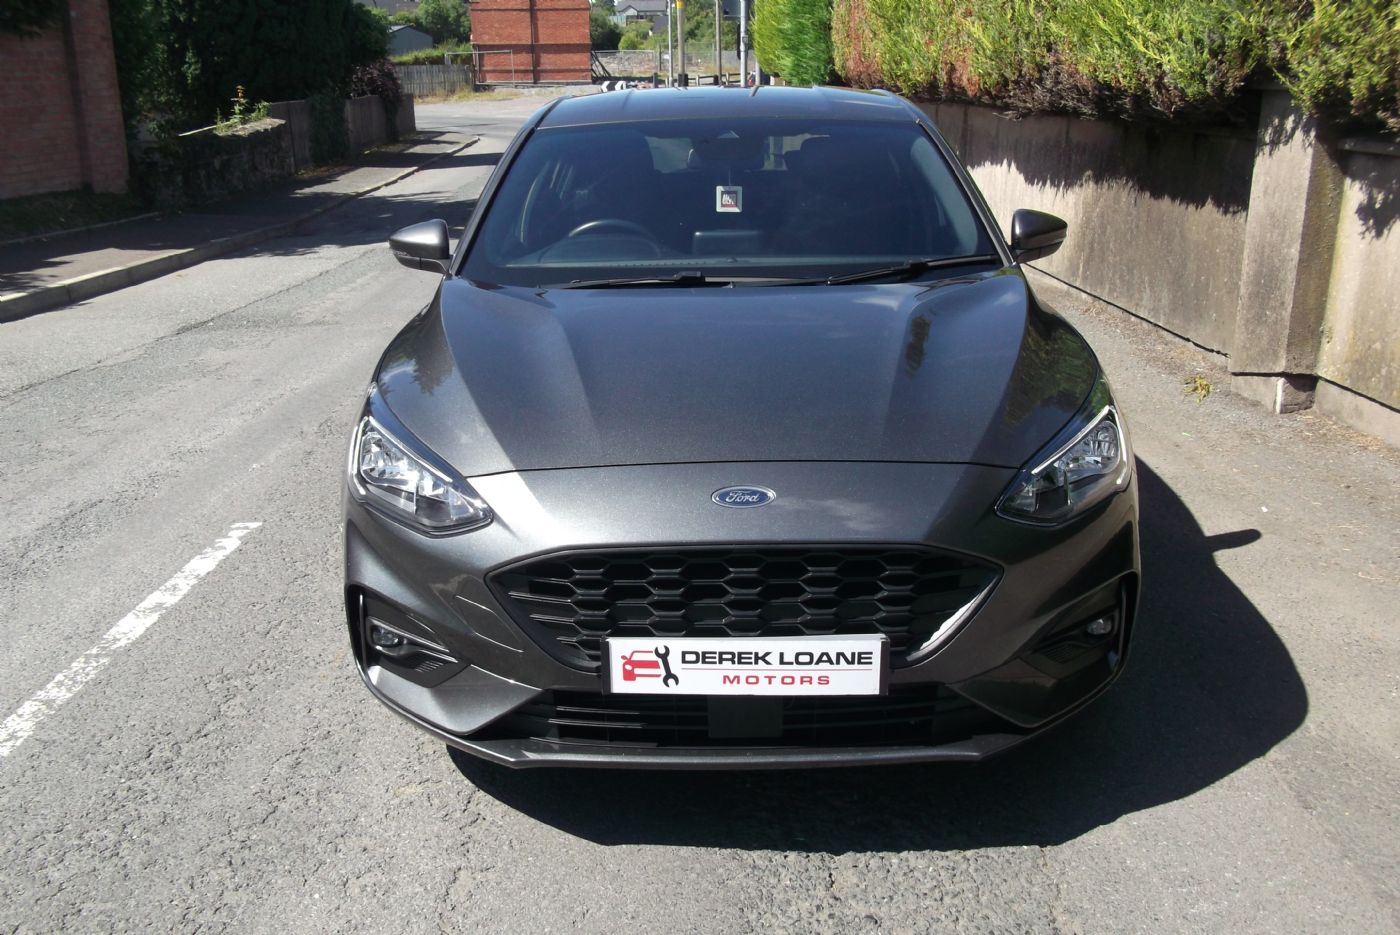 2020 Ford Focus Unleaded Manual – Derek Loane Motors full